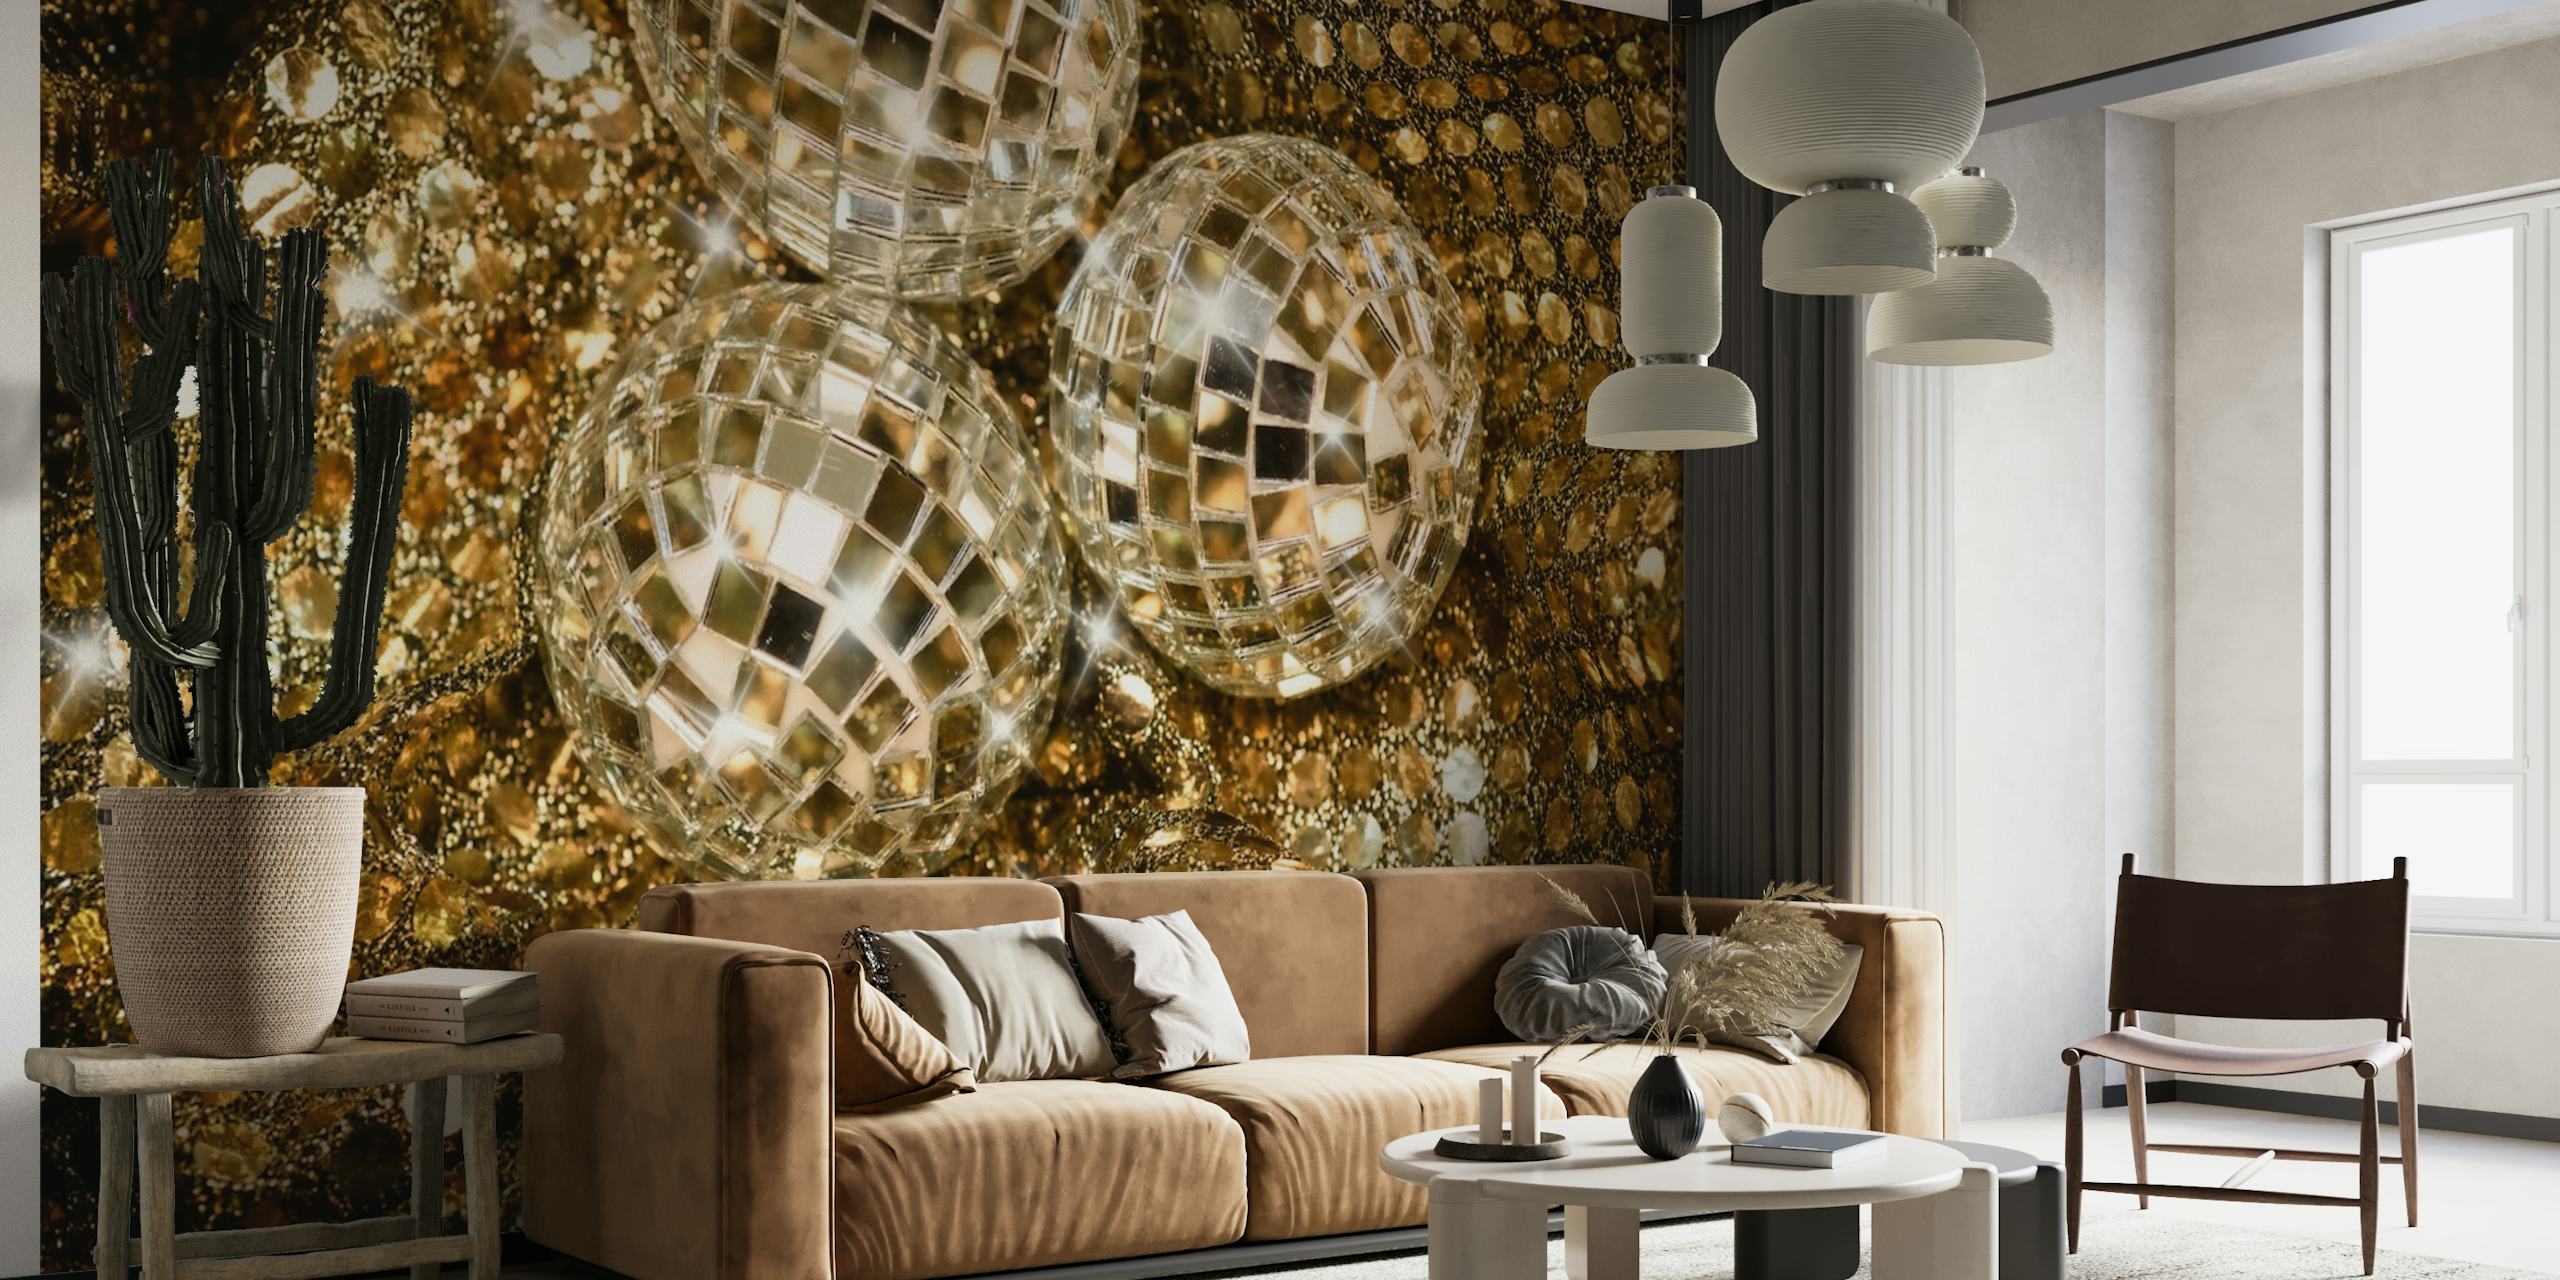 Sparkling Glam Gold Glitter 3 Wallpaper - Buy Online